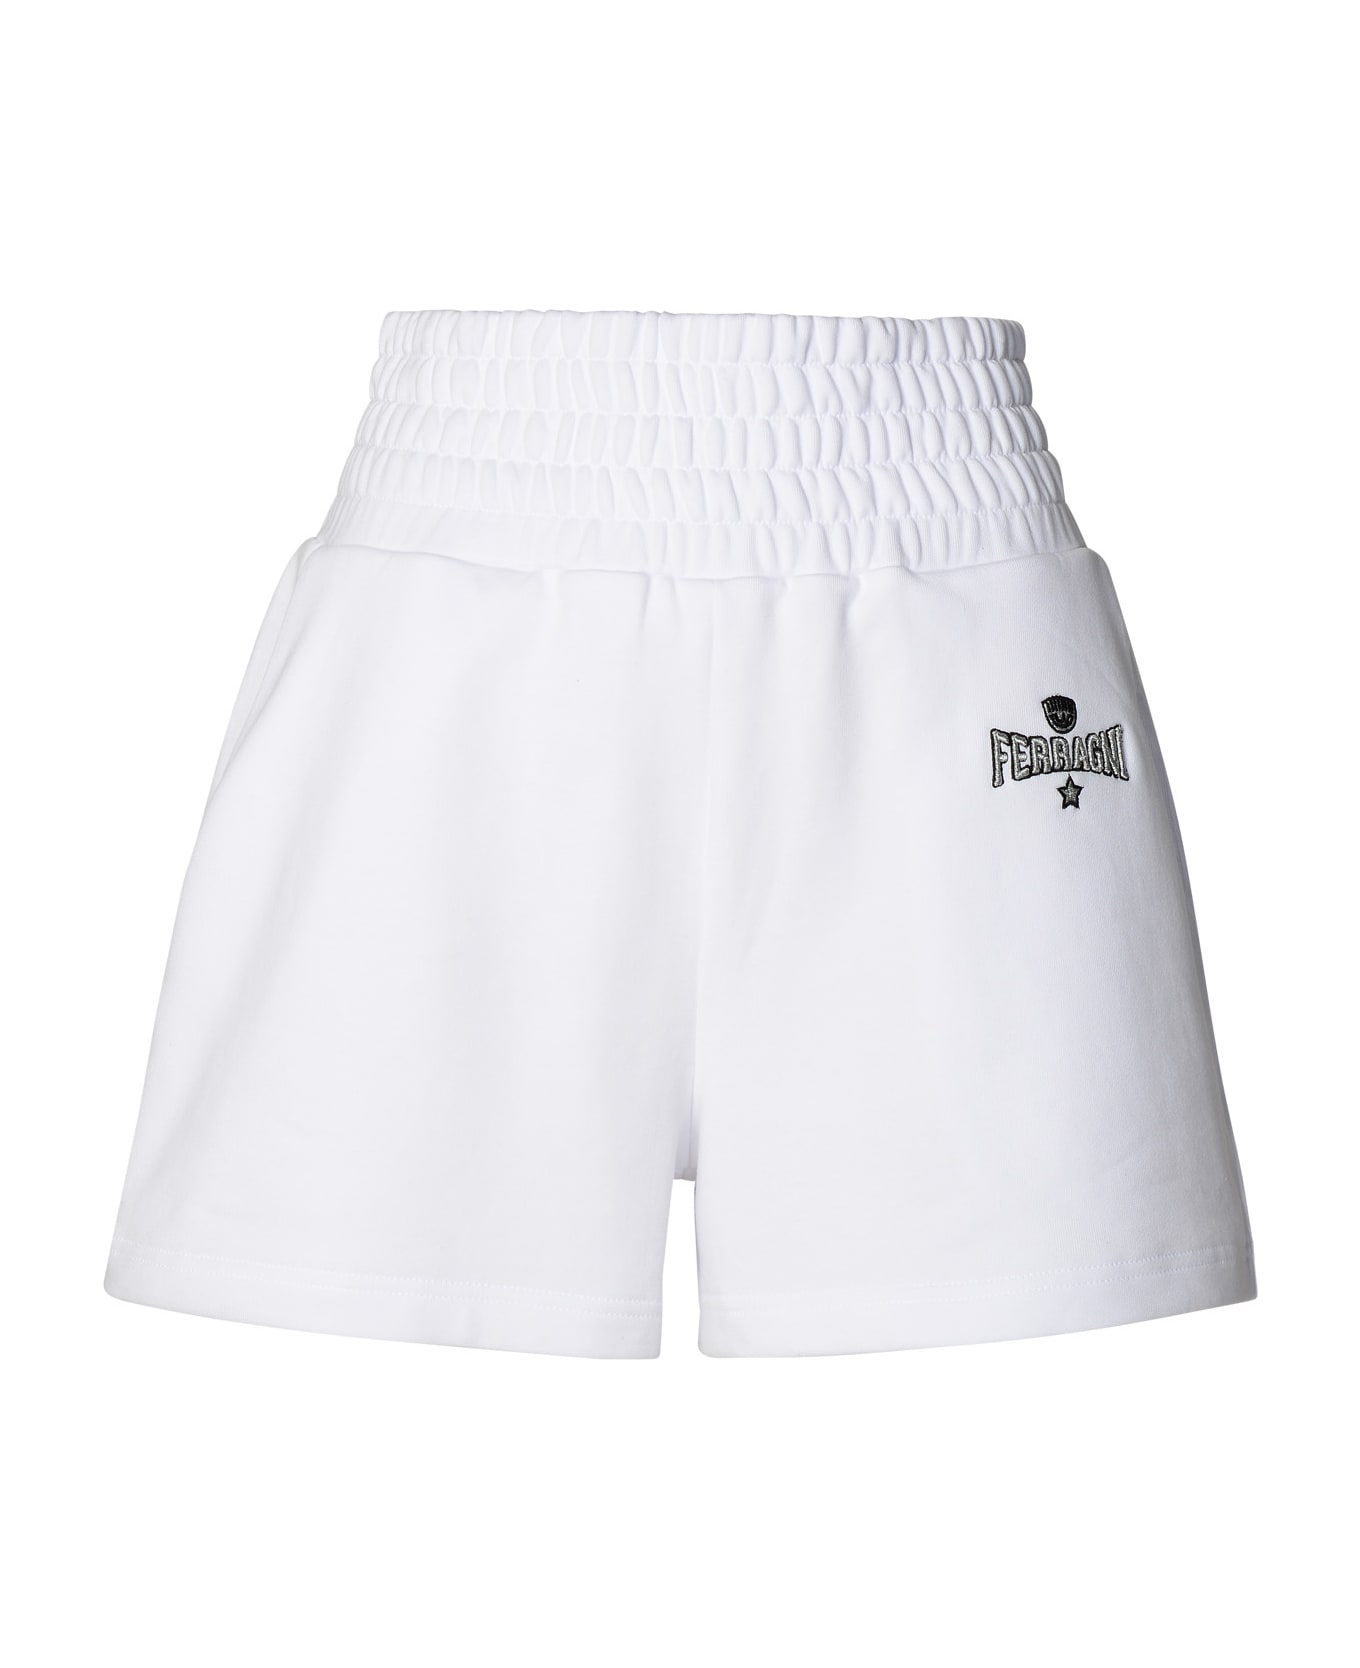 Chiara Ferragni White Cotton Shorts - White